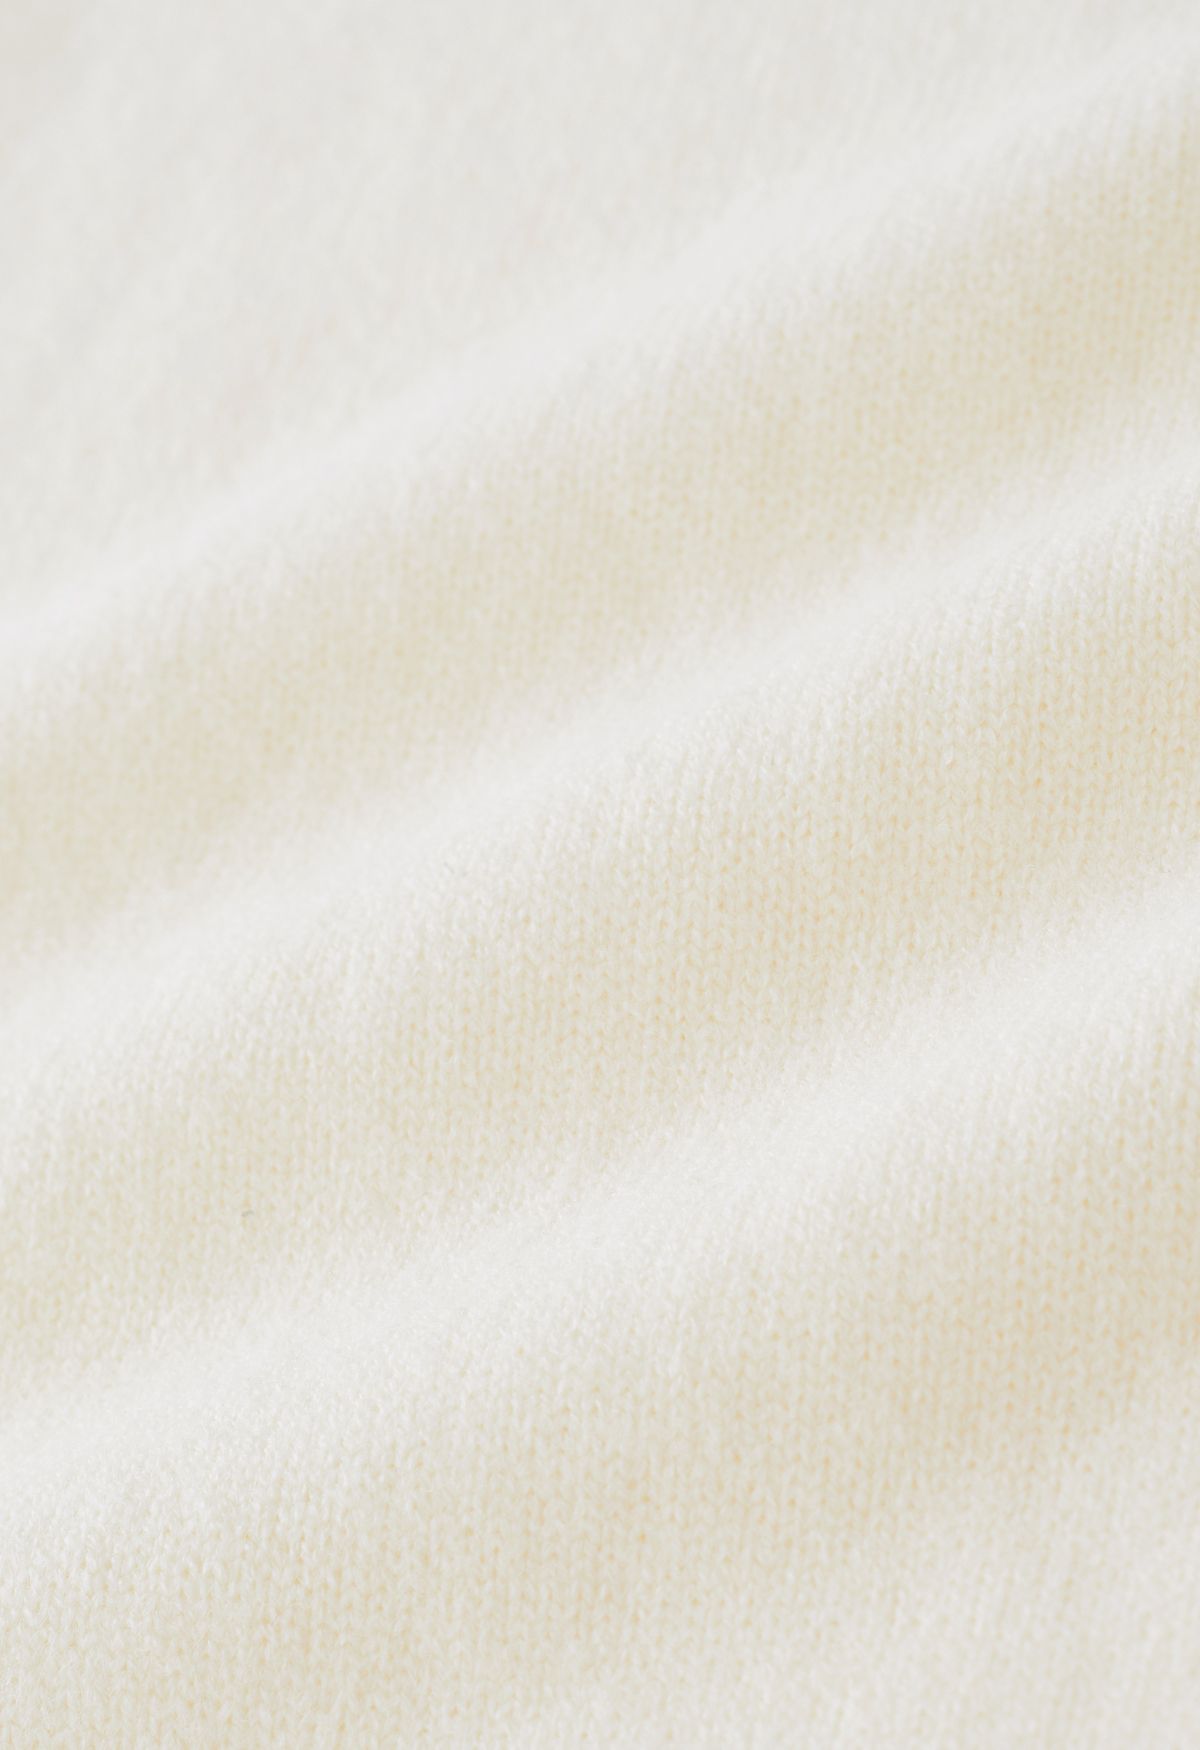 Conjunto de suéter alto y pantalón de punto con cuello alto en color crema